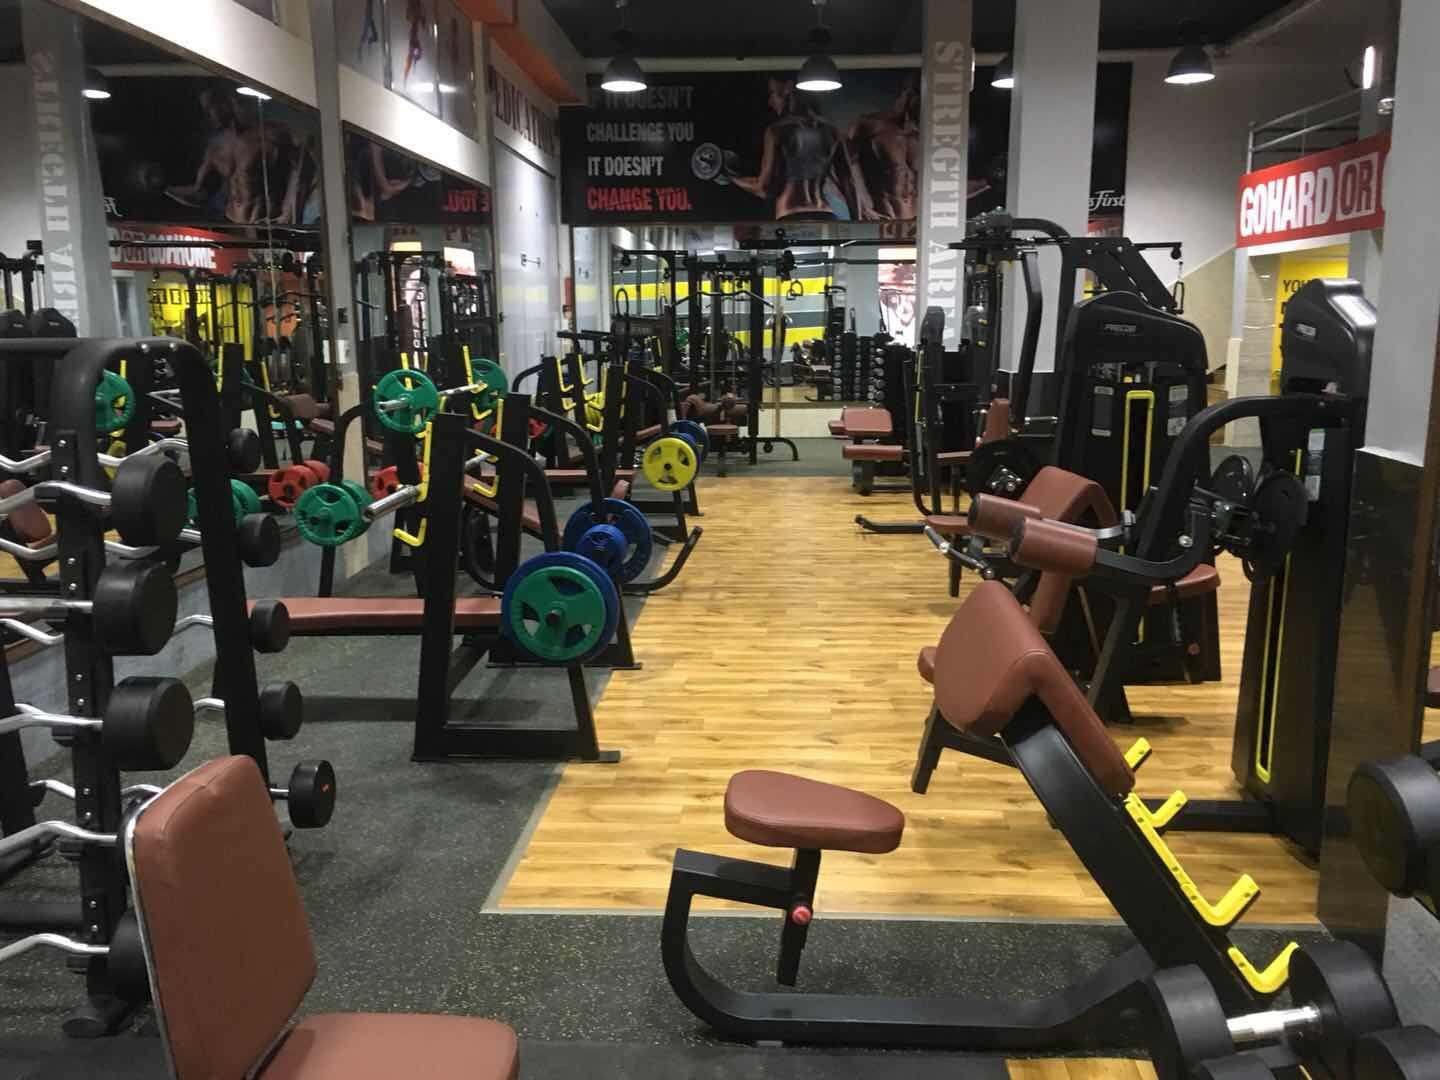 fitness center equipment